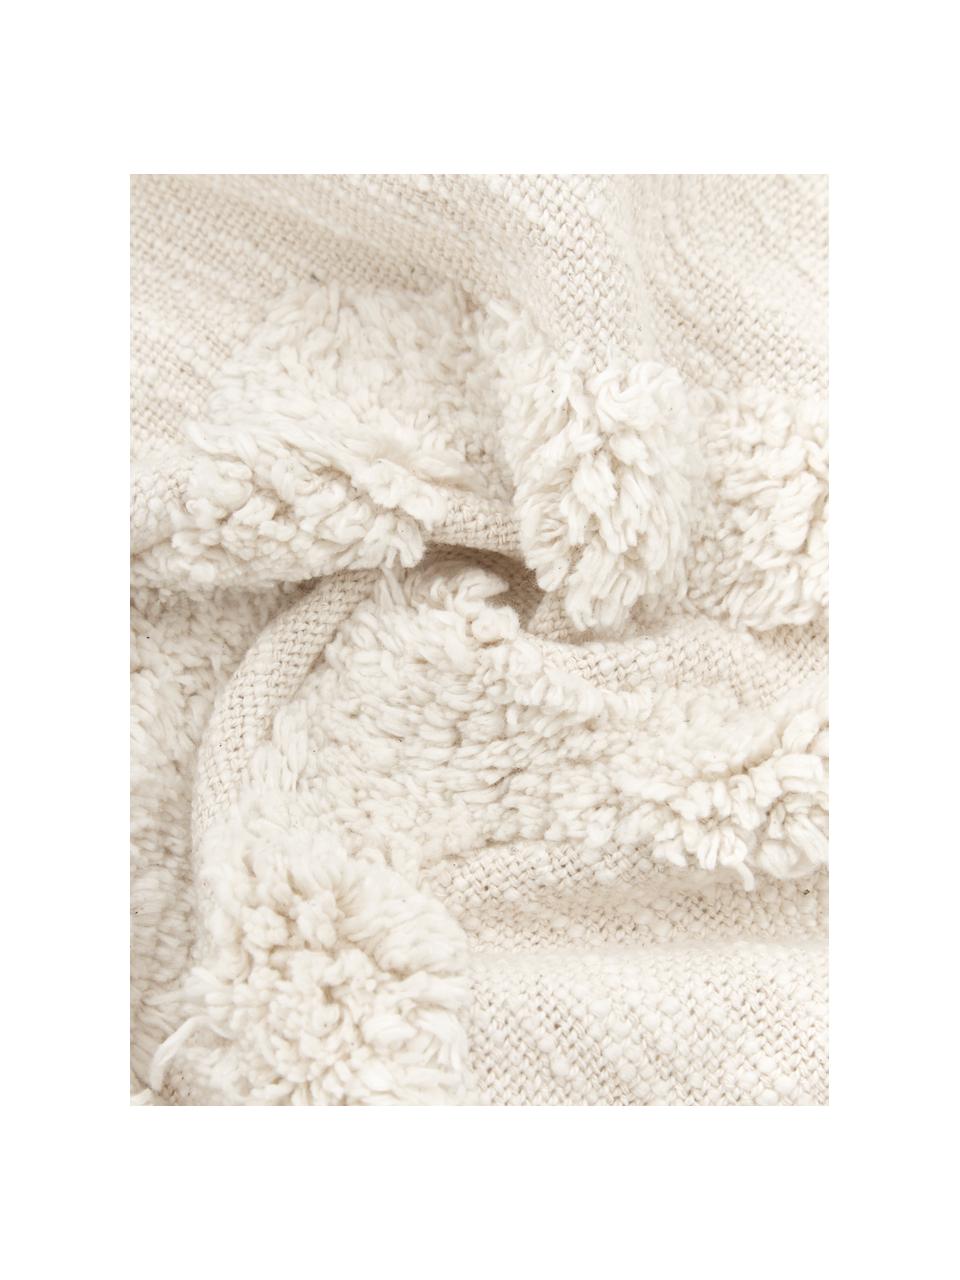 Koc z bawełny Akesha, 100% bawełna, Odcienie kremowego, S 130 x D 170 cm